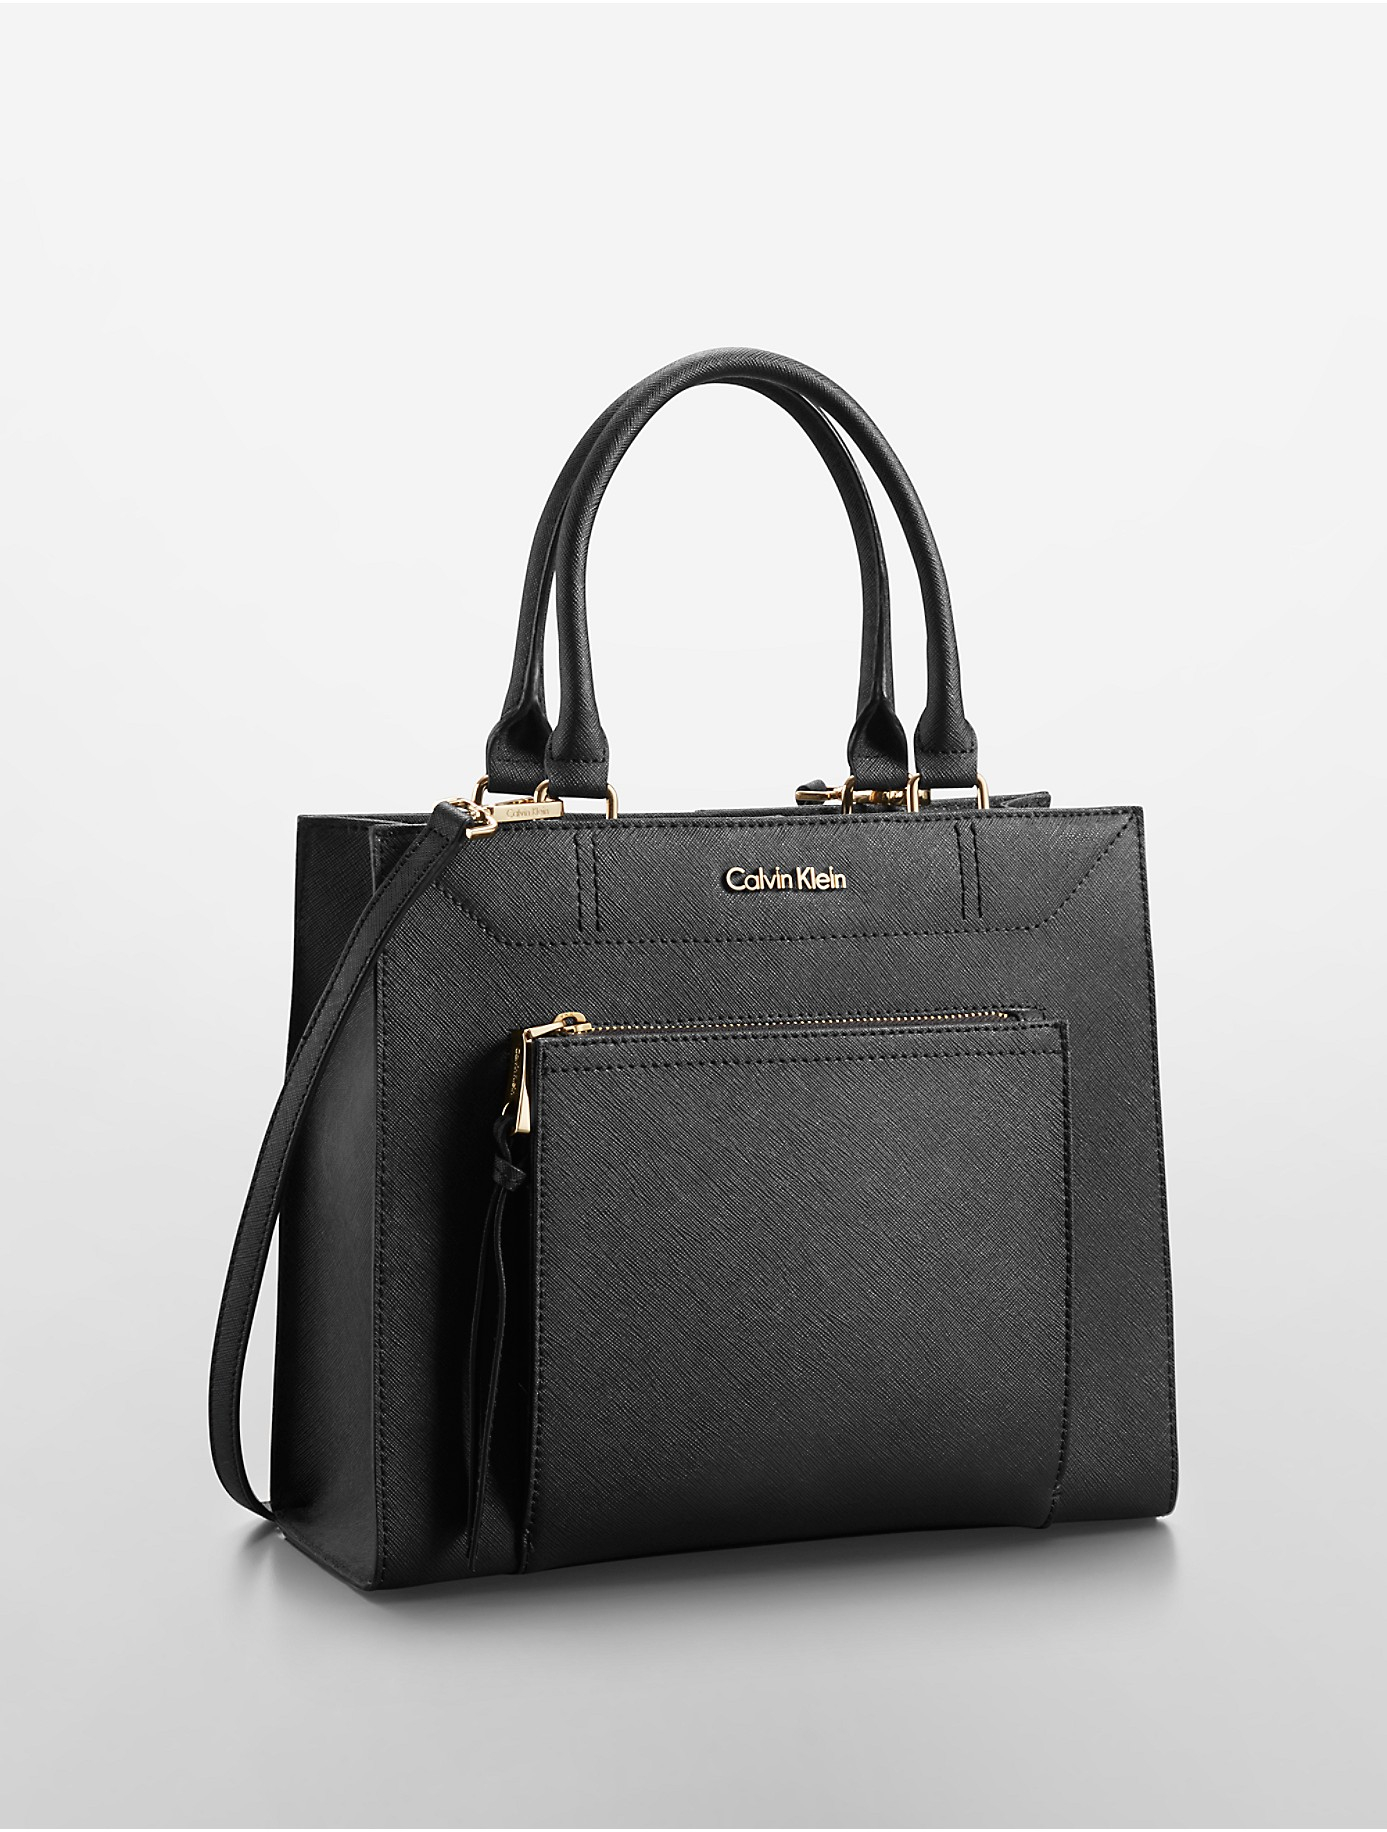 details Specialiseren Een bezoek aan grootouders Calvin Klein Saffiano Leather Small Tote Bag in Black | Lyst